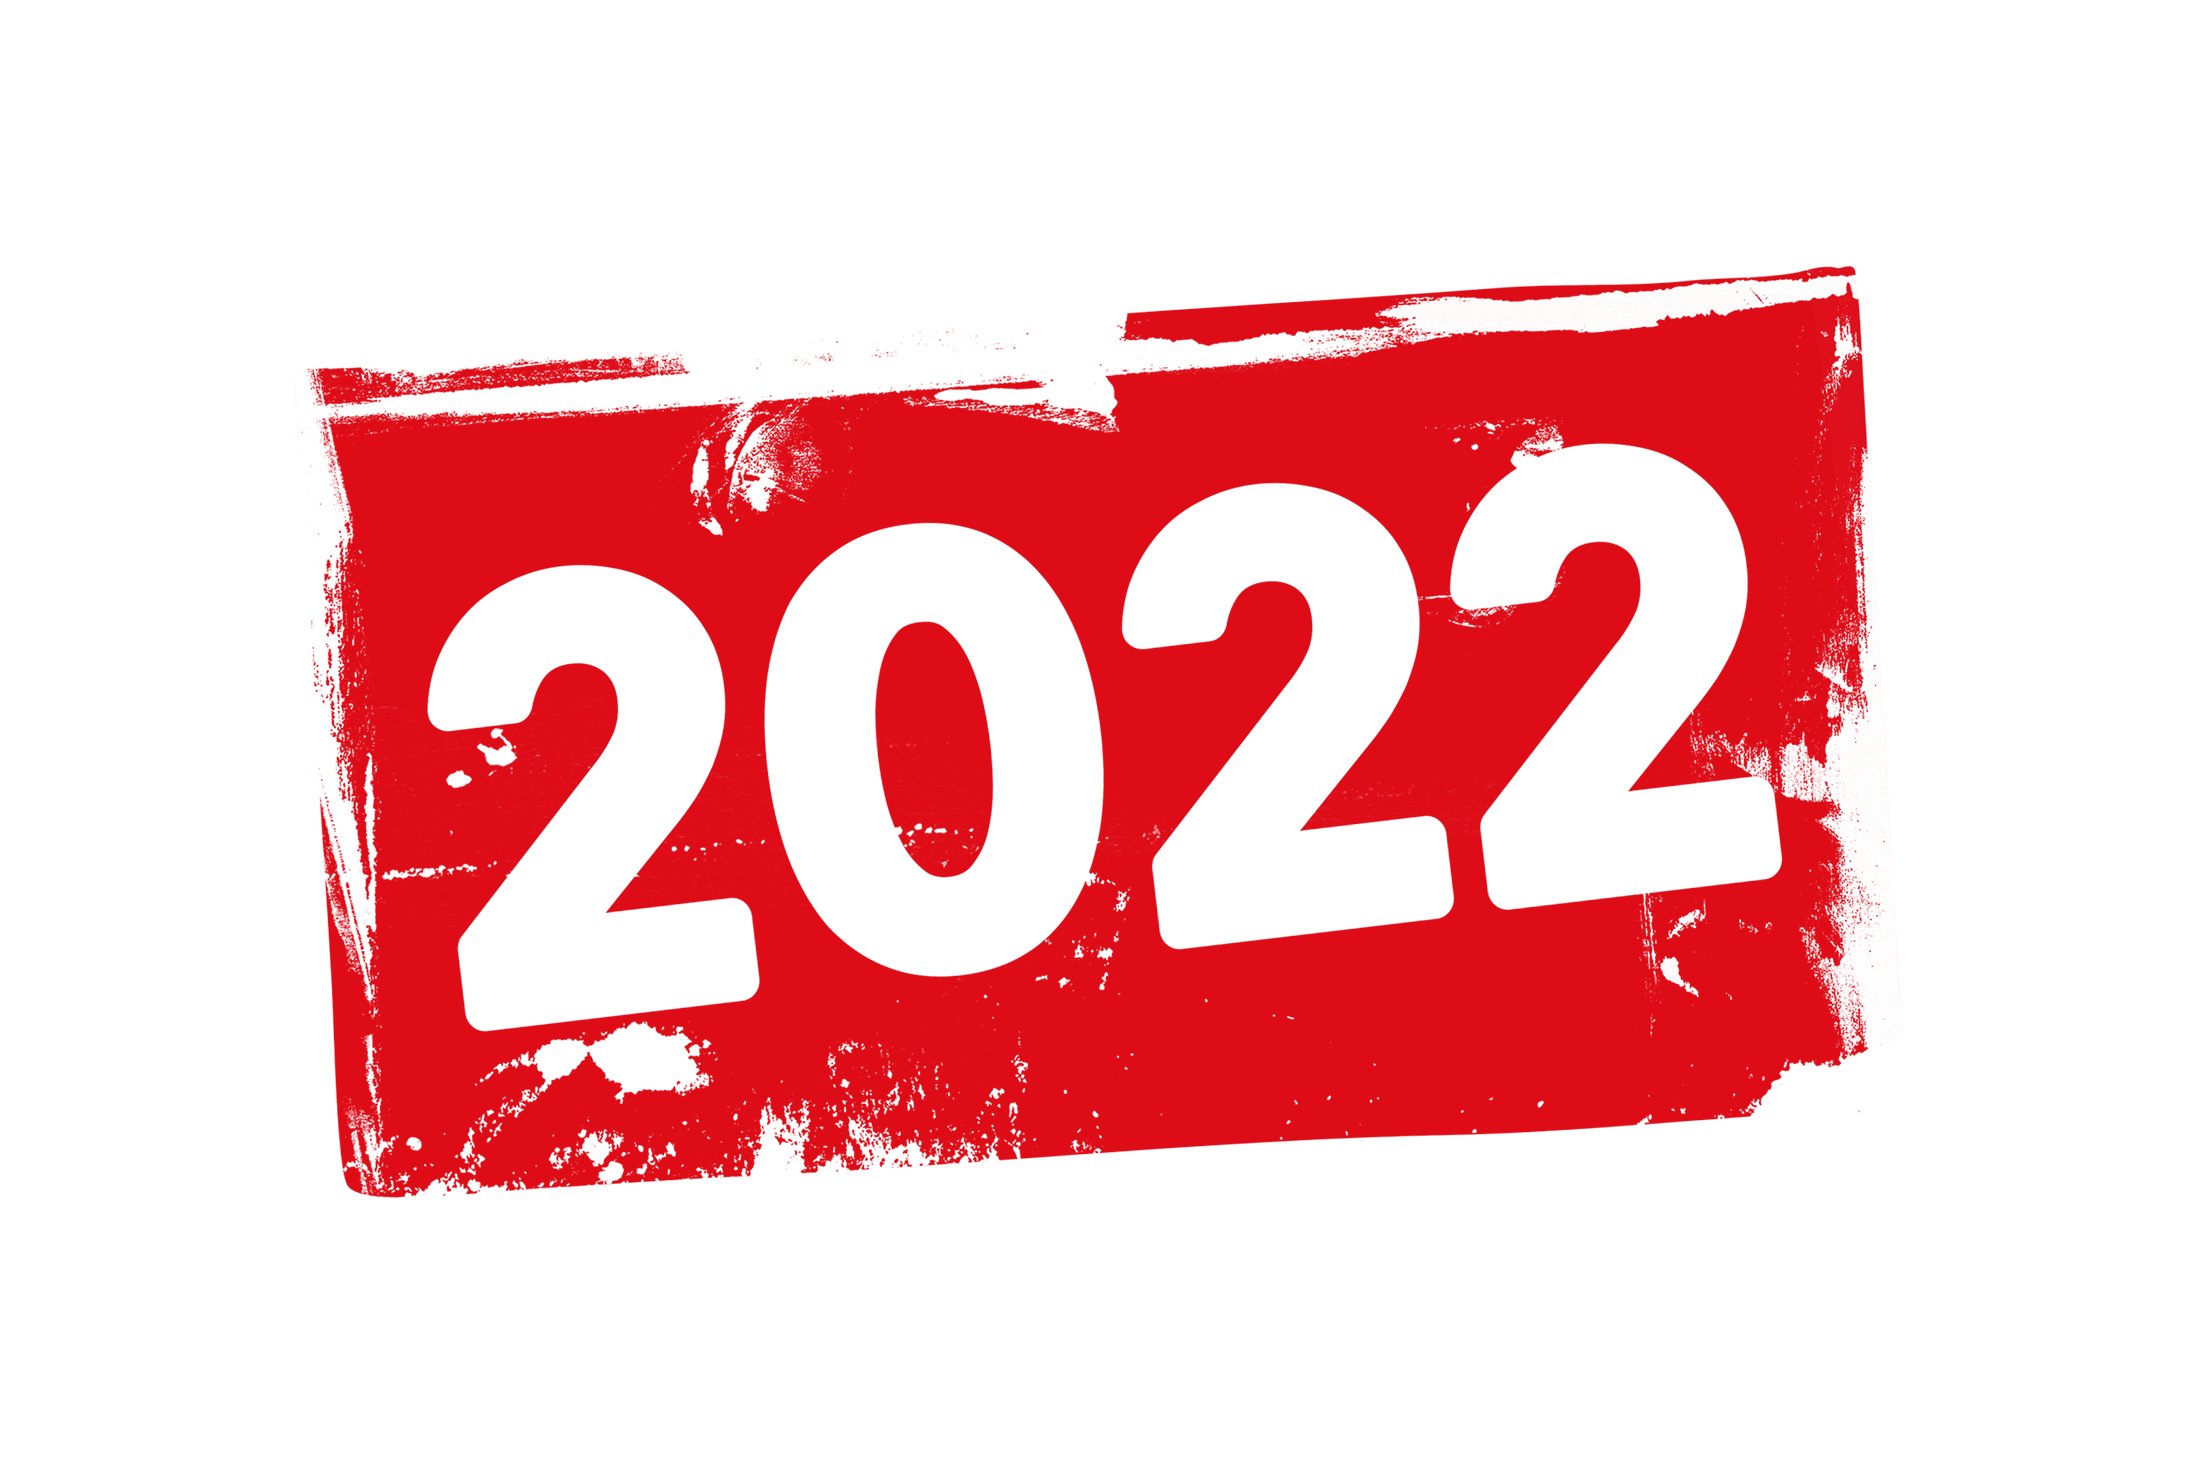 Grunge 2022 label PSD - PSDstamps